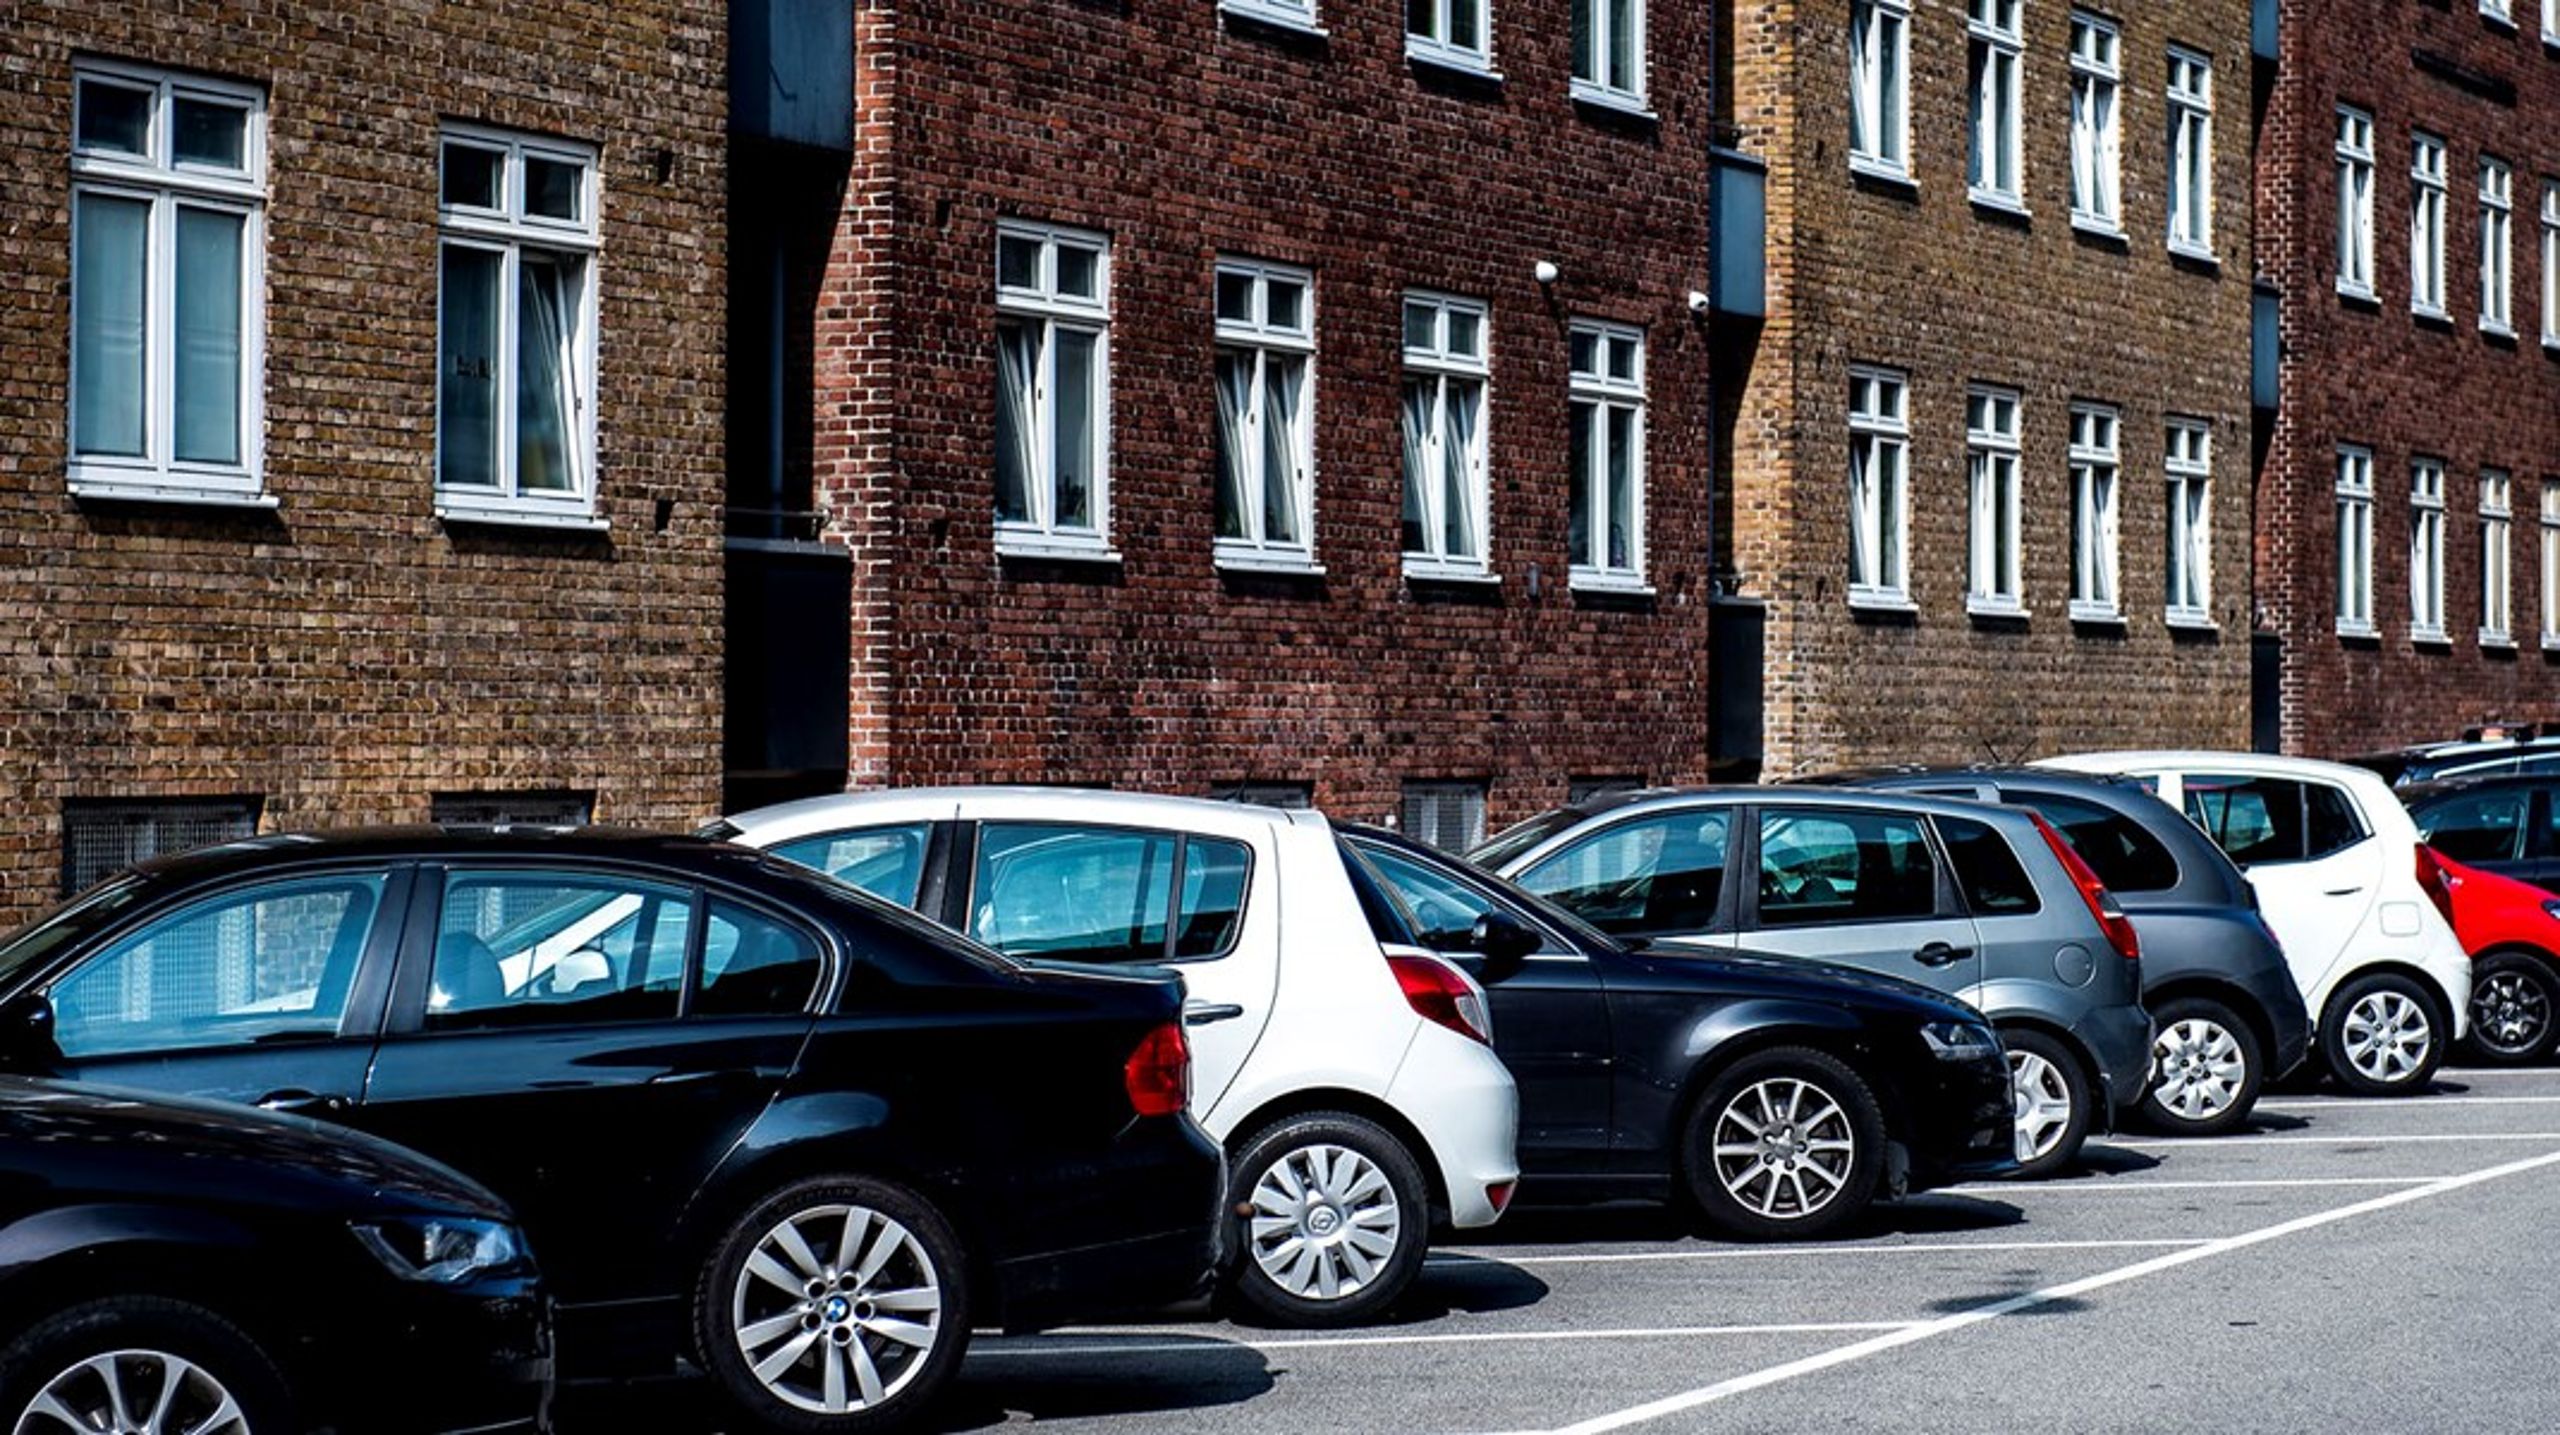 En måde at påvirke folks adfærd kan blandt andet være at forøge antallet af parkeringspladser, der er dedikeret til nabo-til-nabo-bildeling, skriver Matias Møl Dalsgaard.